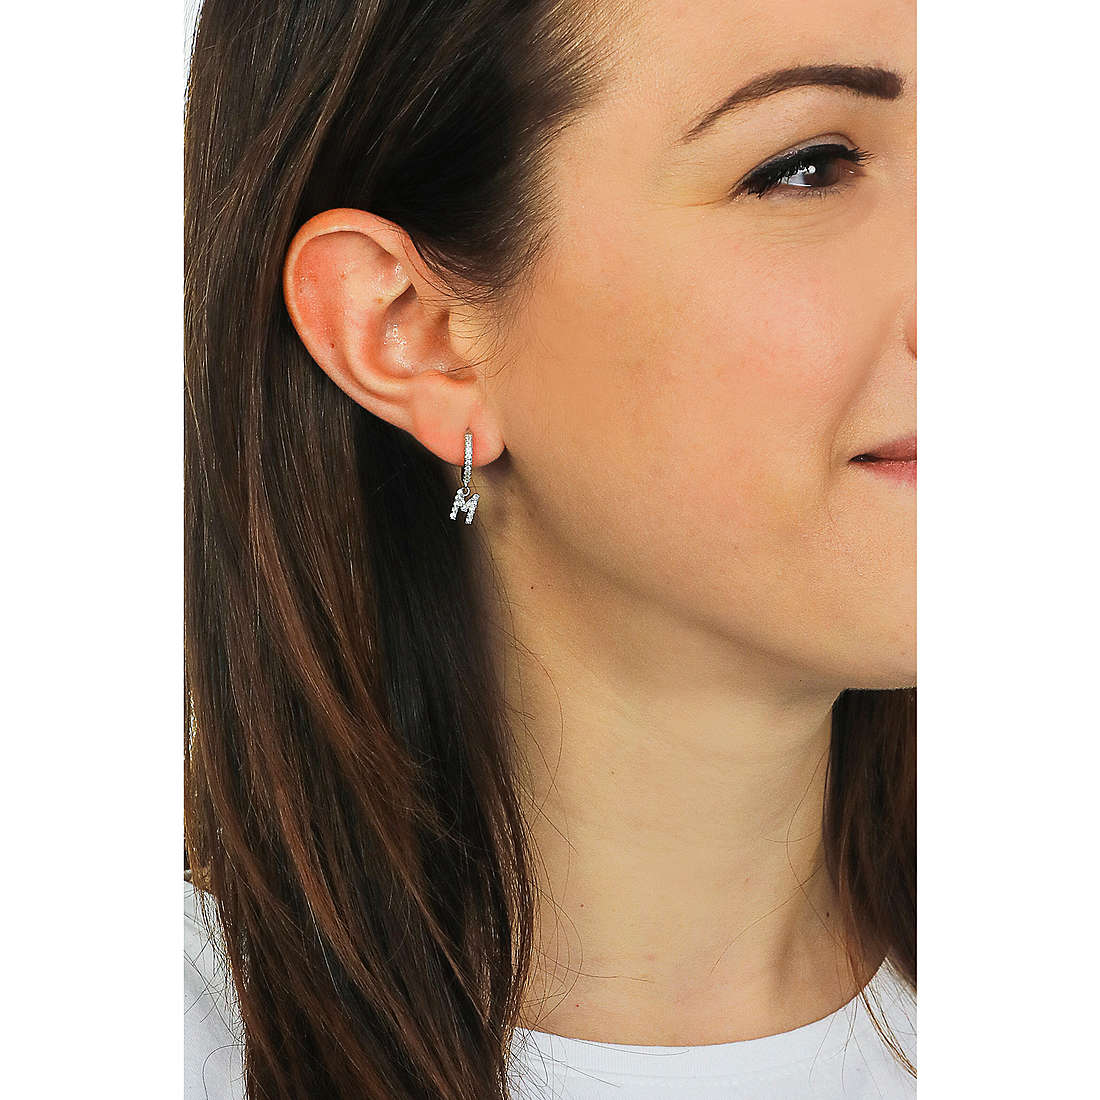 Rebecca earrings Myn woman SWNOAM13 wearing